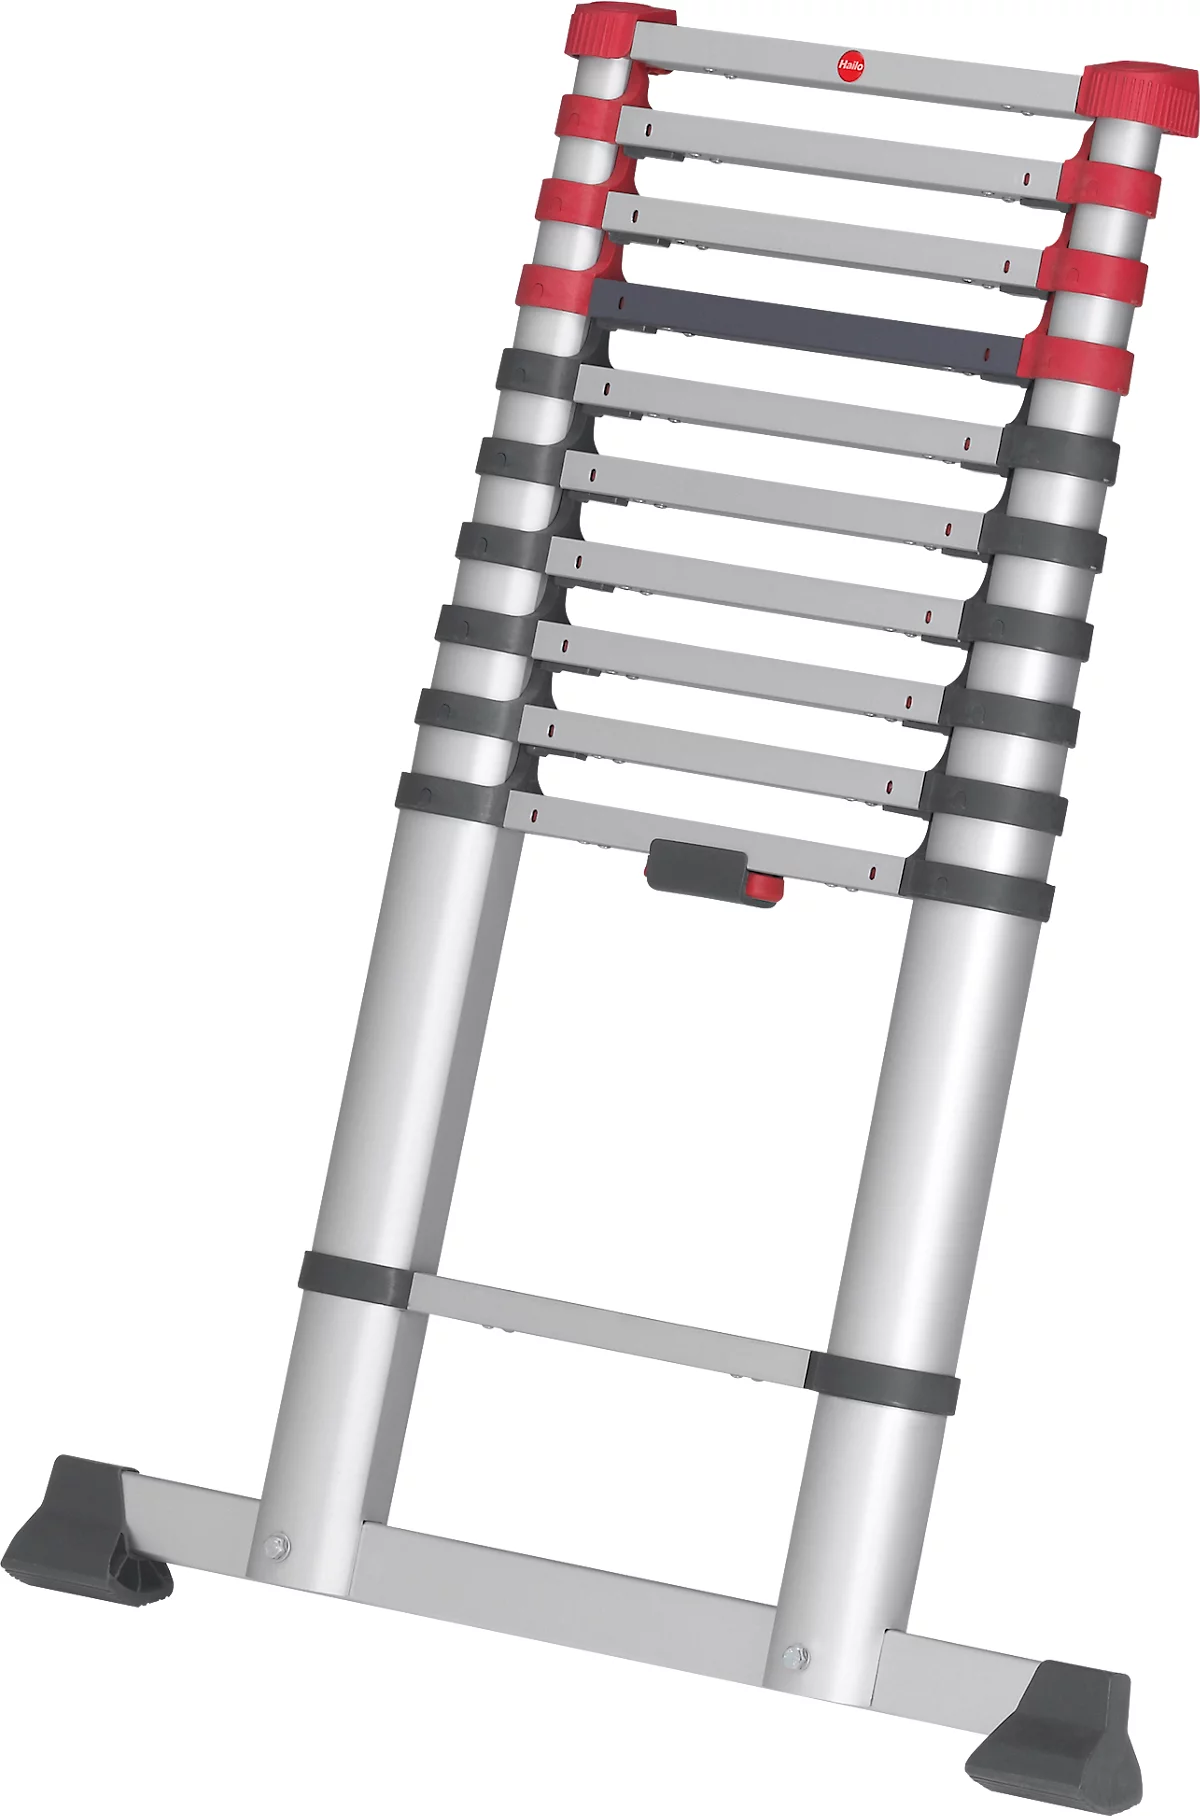 Teleskopleiter Hailo T80 FlexLine, EN 131-6, höhenverstellbar, Einhand-Entriegelung, Quertraverse, bis 150 kg, 11 Sprossen